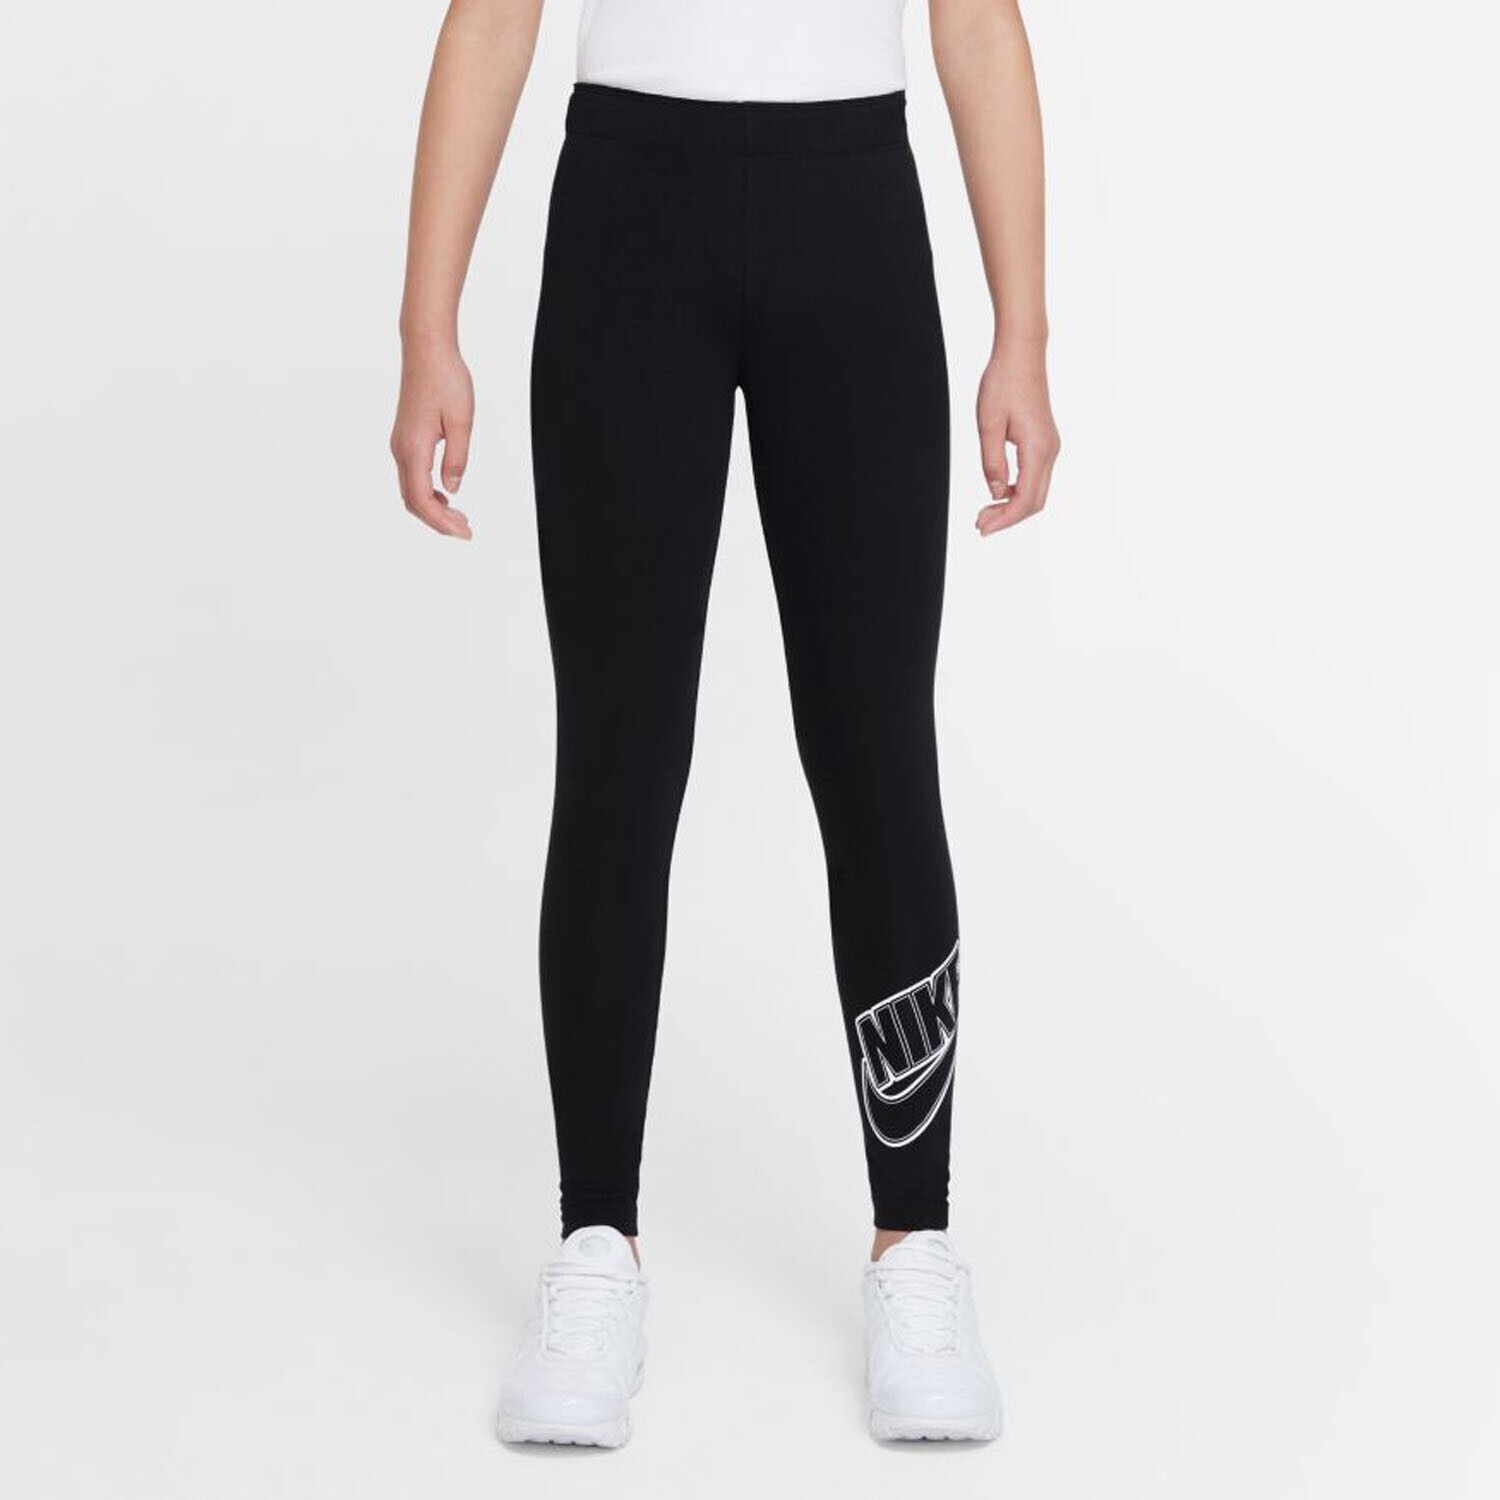 Nike NSW FAVORITES Legggs Girls black-white ab 17,95 €